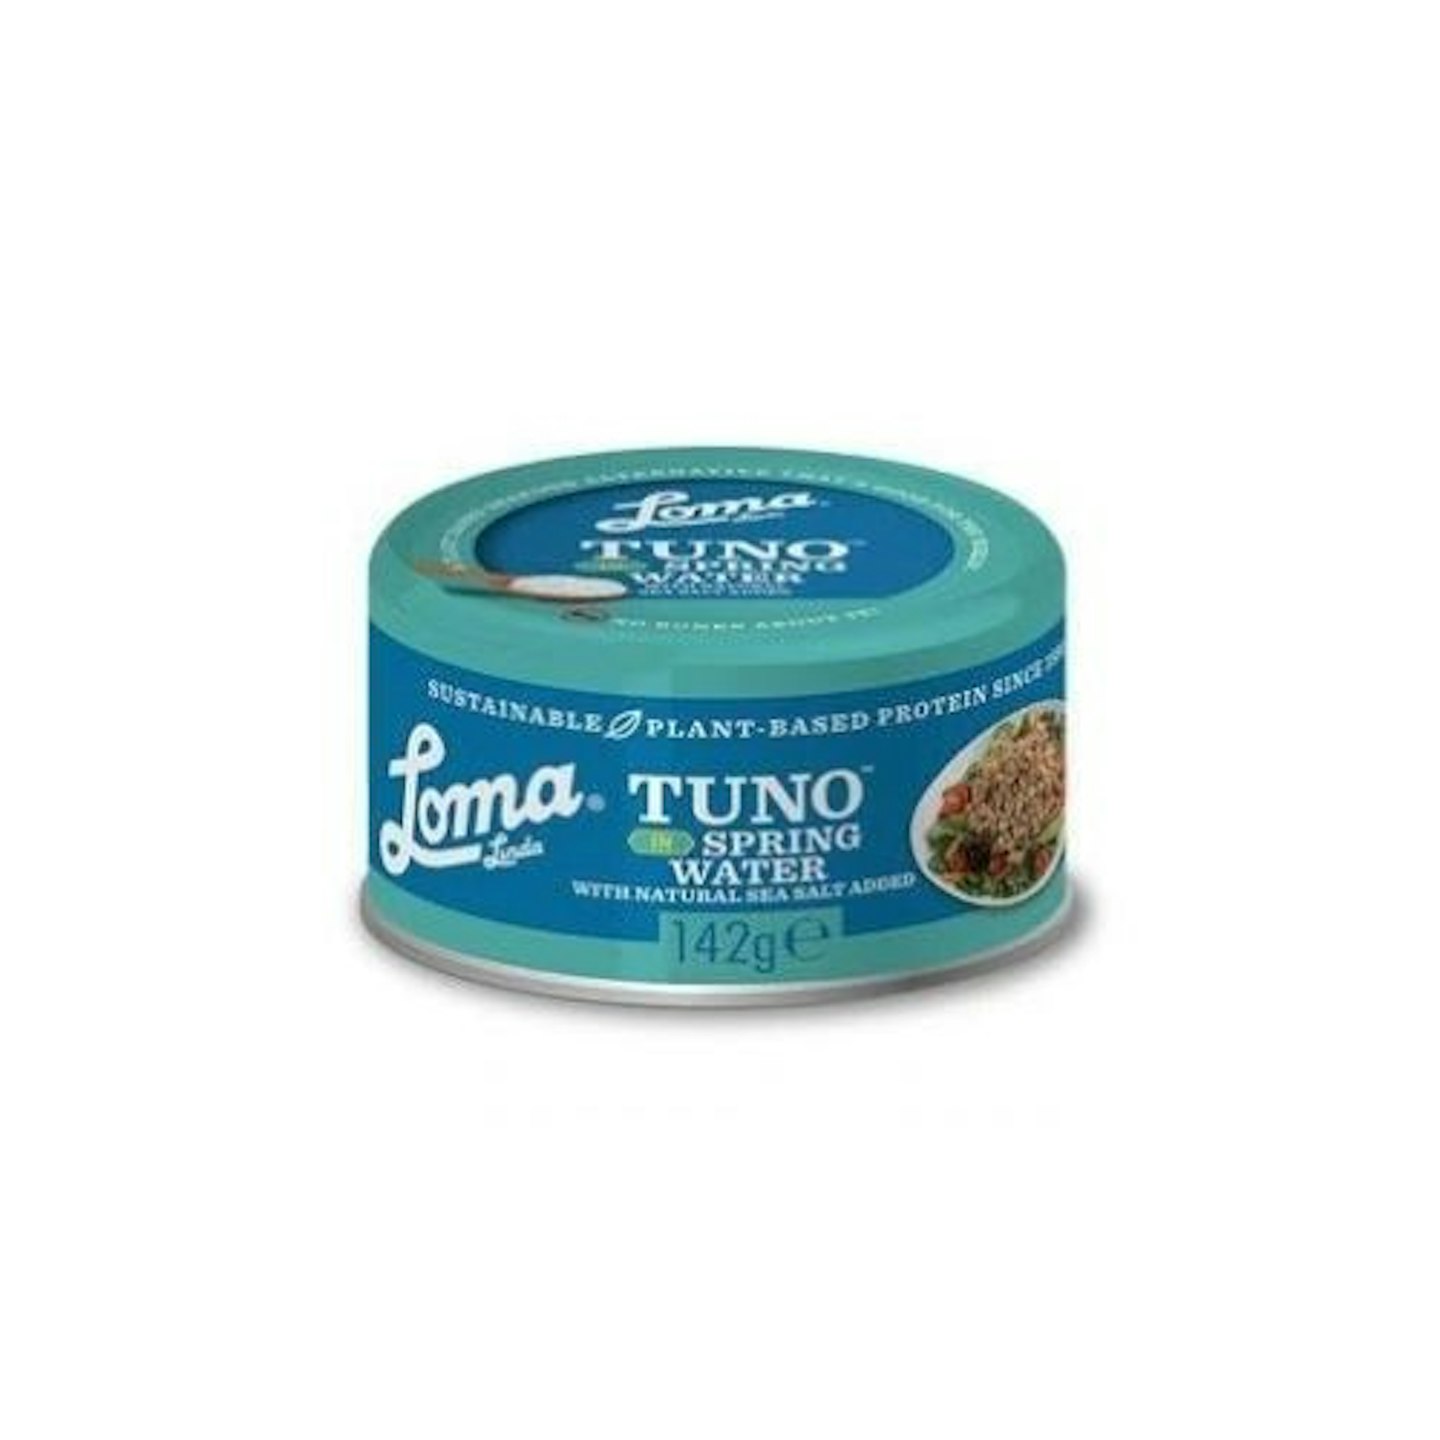 Loma Linda - Tuno (Vegan Tuna) in Spring Water Can (142g)